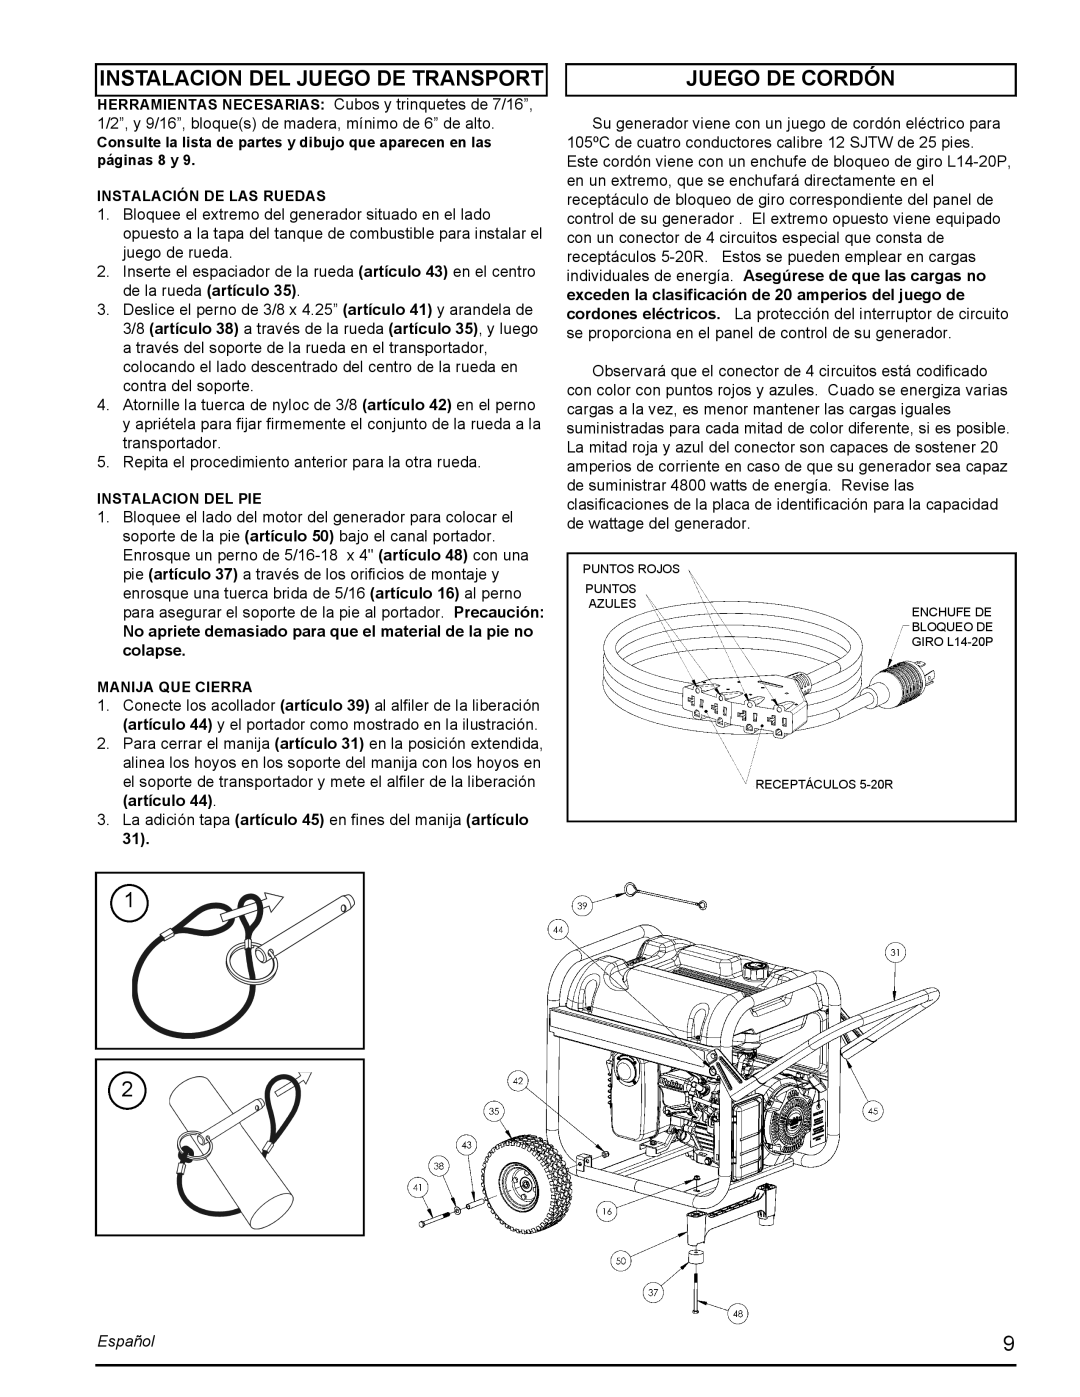 Powermate PMC435001 manual Instalacion Del Juego De Transport, Juego De Cordón, Español 